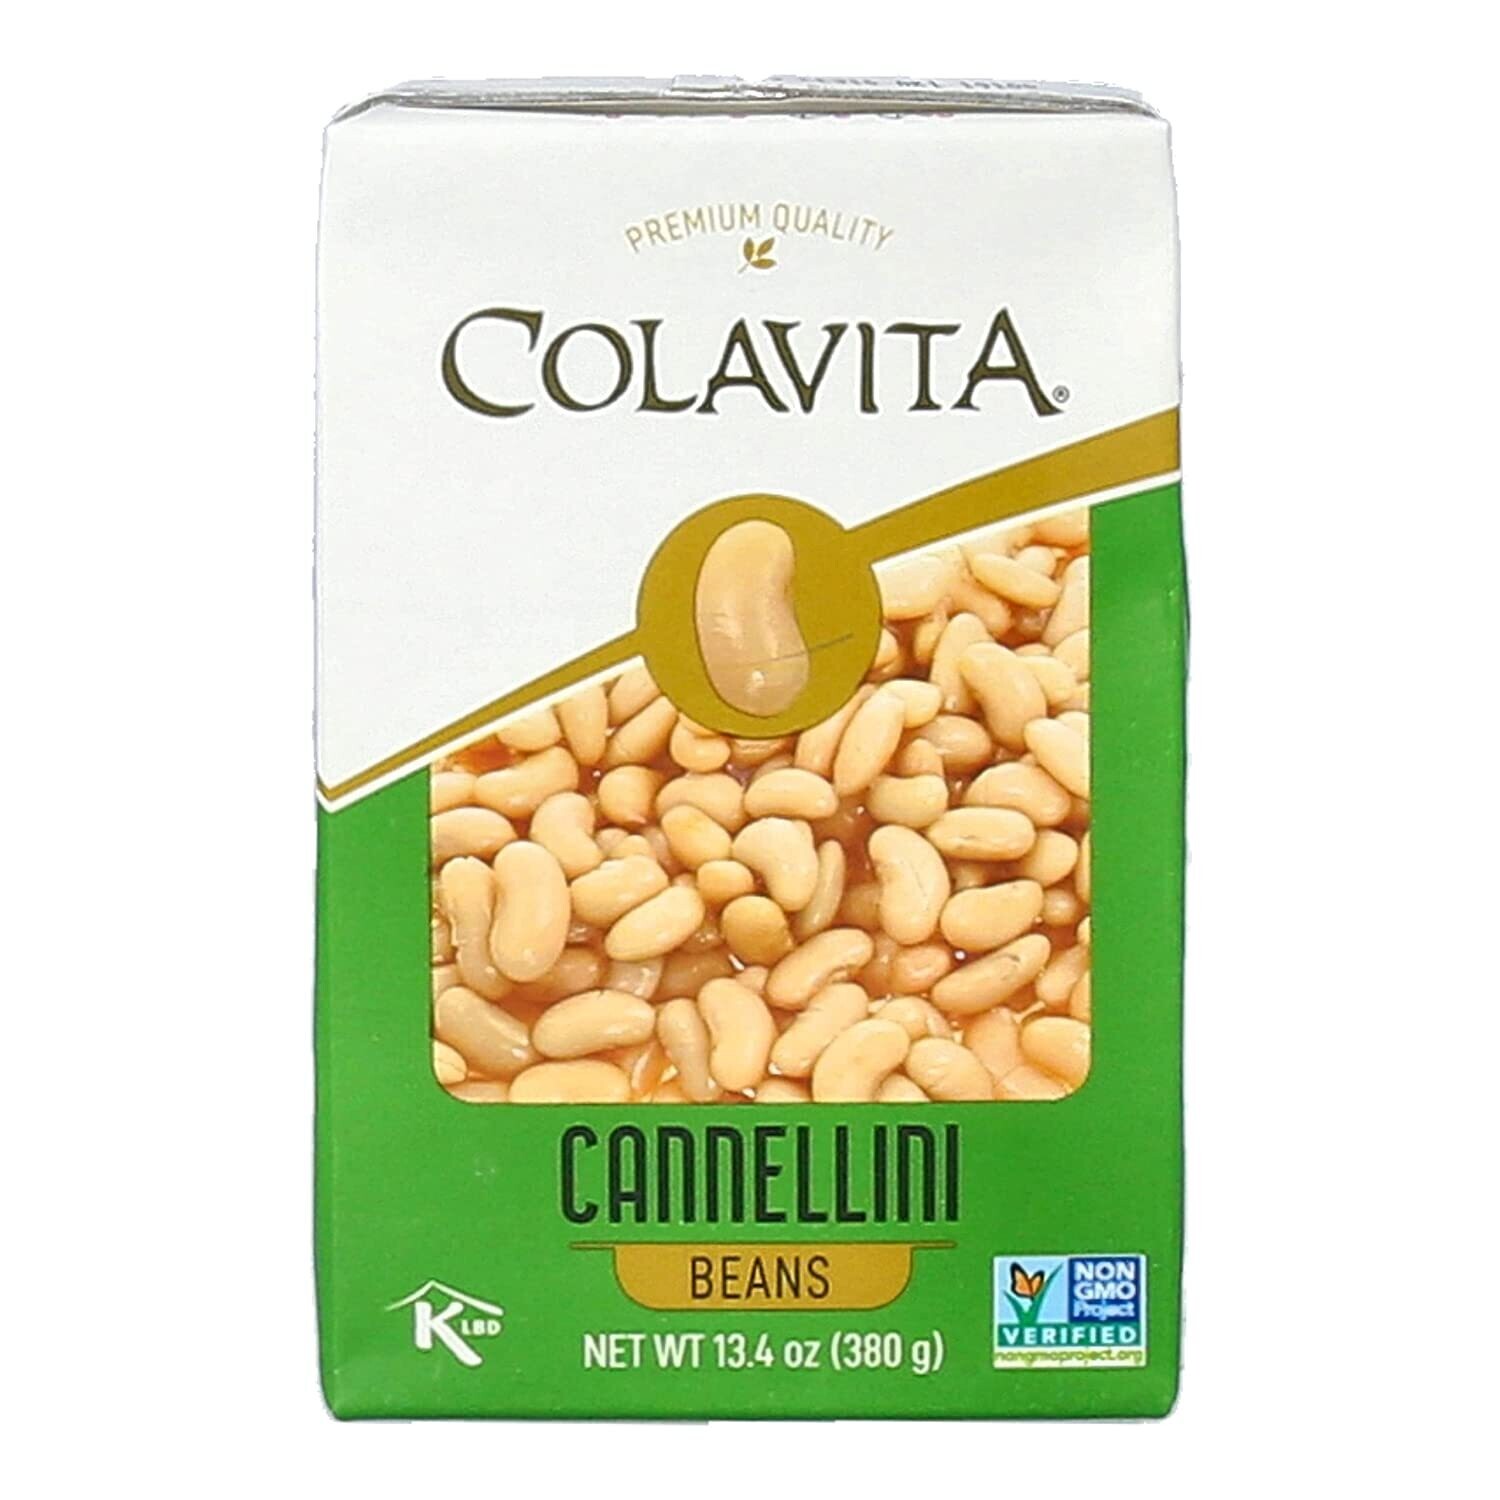 Colavita Bean Box - Cannellini Beans